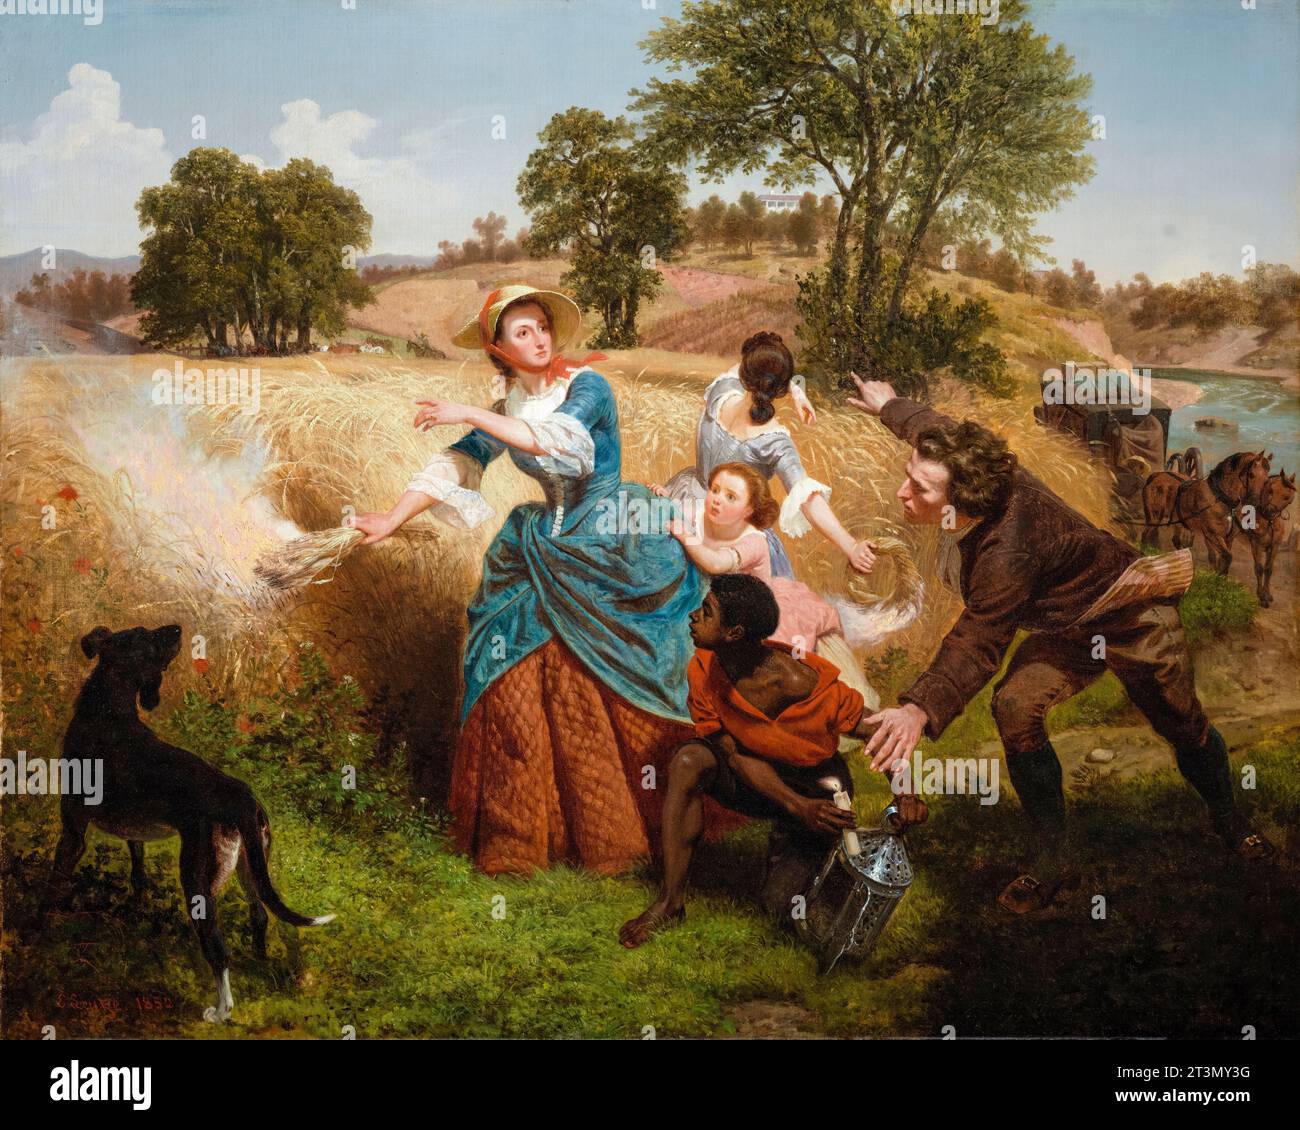 Emanuel Leutze, signora Schuyler che brucia i suoi campi di grano sull'approccio degli inglesi, dipingendo ad olio su tela, 1852 Foto Stock